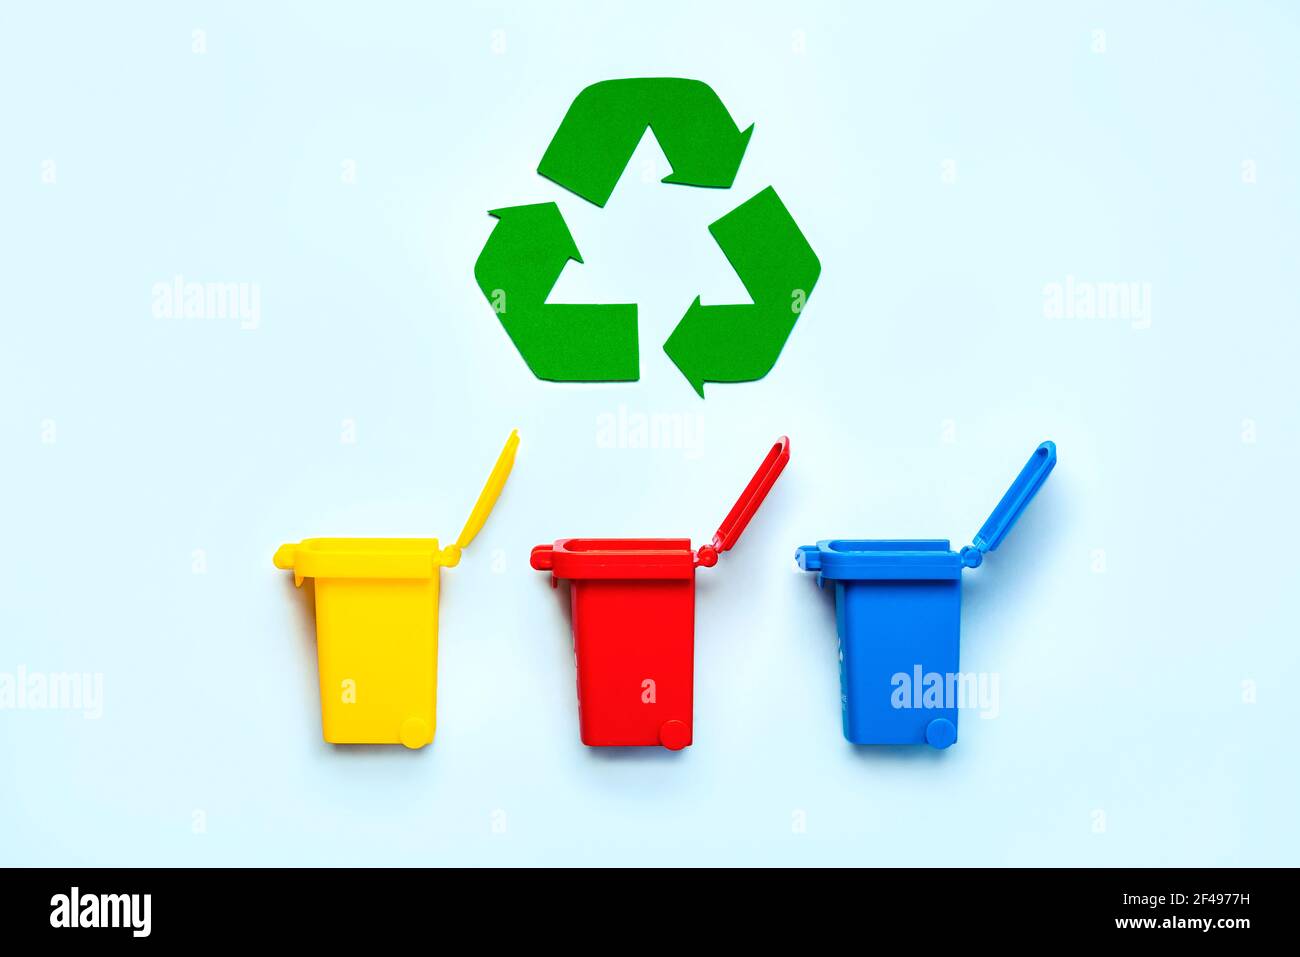 Bacs de recyclage jaune, rouge et bleu avec symbole de recyclage sur fond bleu. Concept de recyclage Banque D'Images